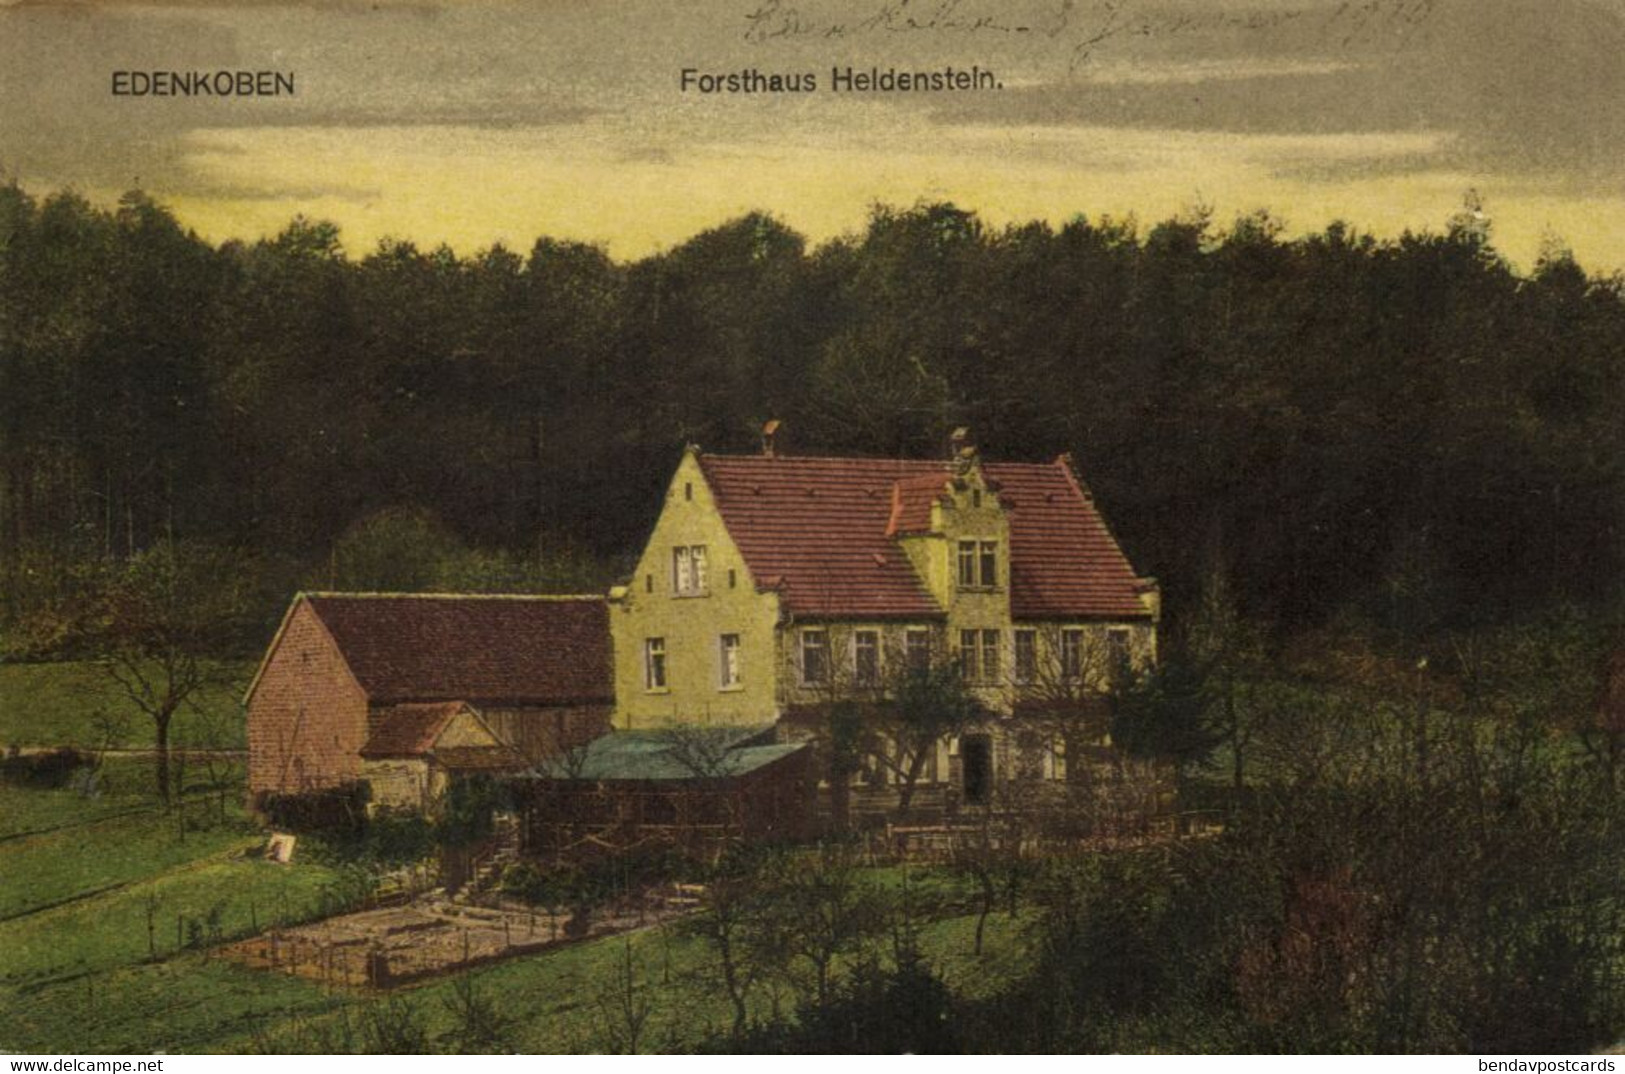 EDENKOBEN, Forsthaus Heidenstein (1919) AK - Edenkoben